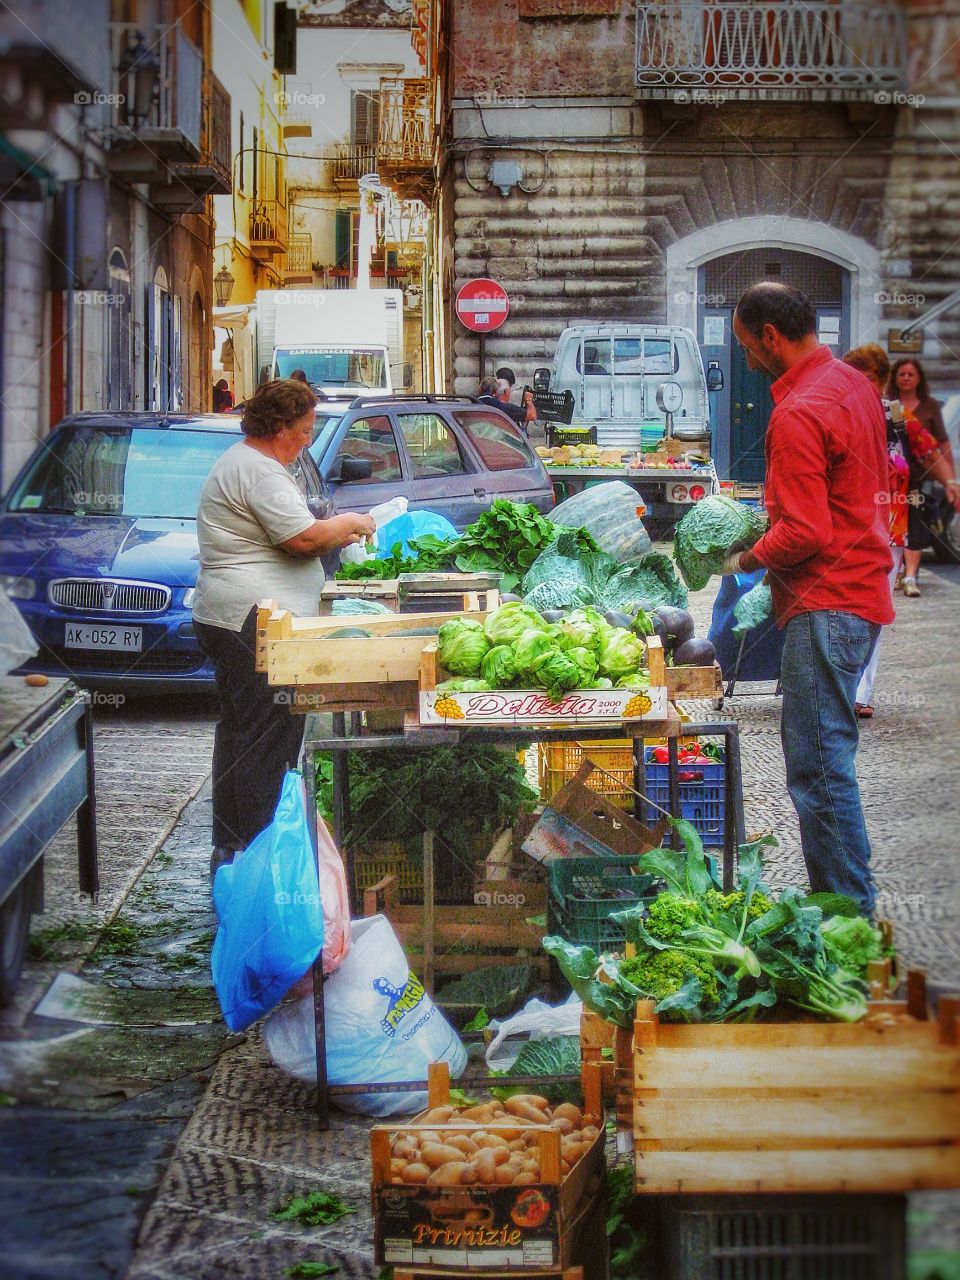 Puglia market